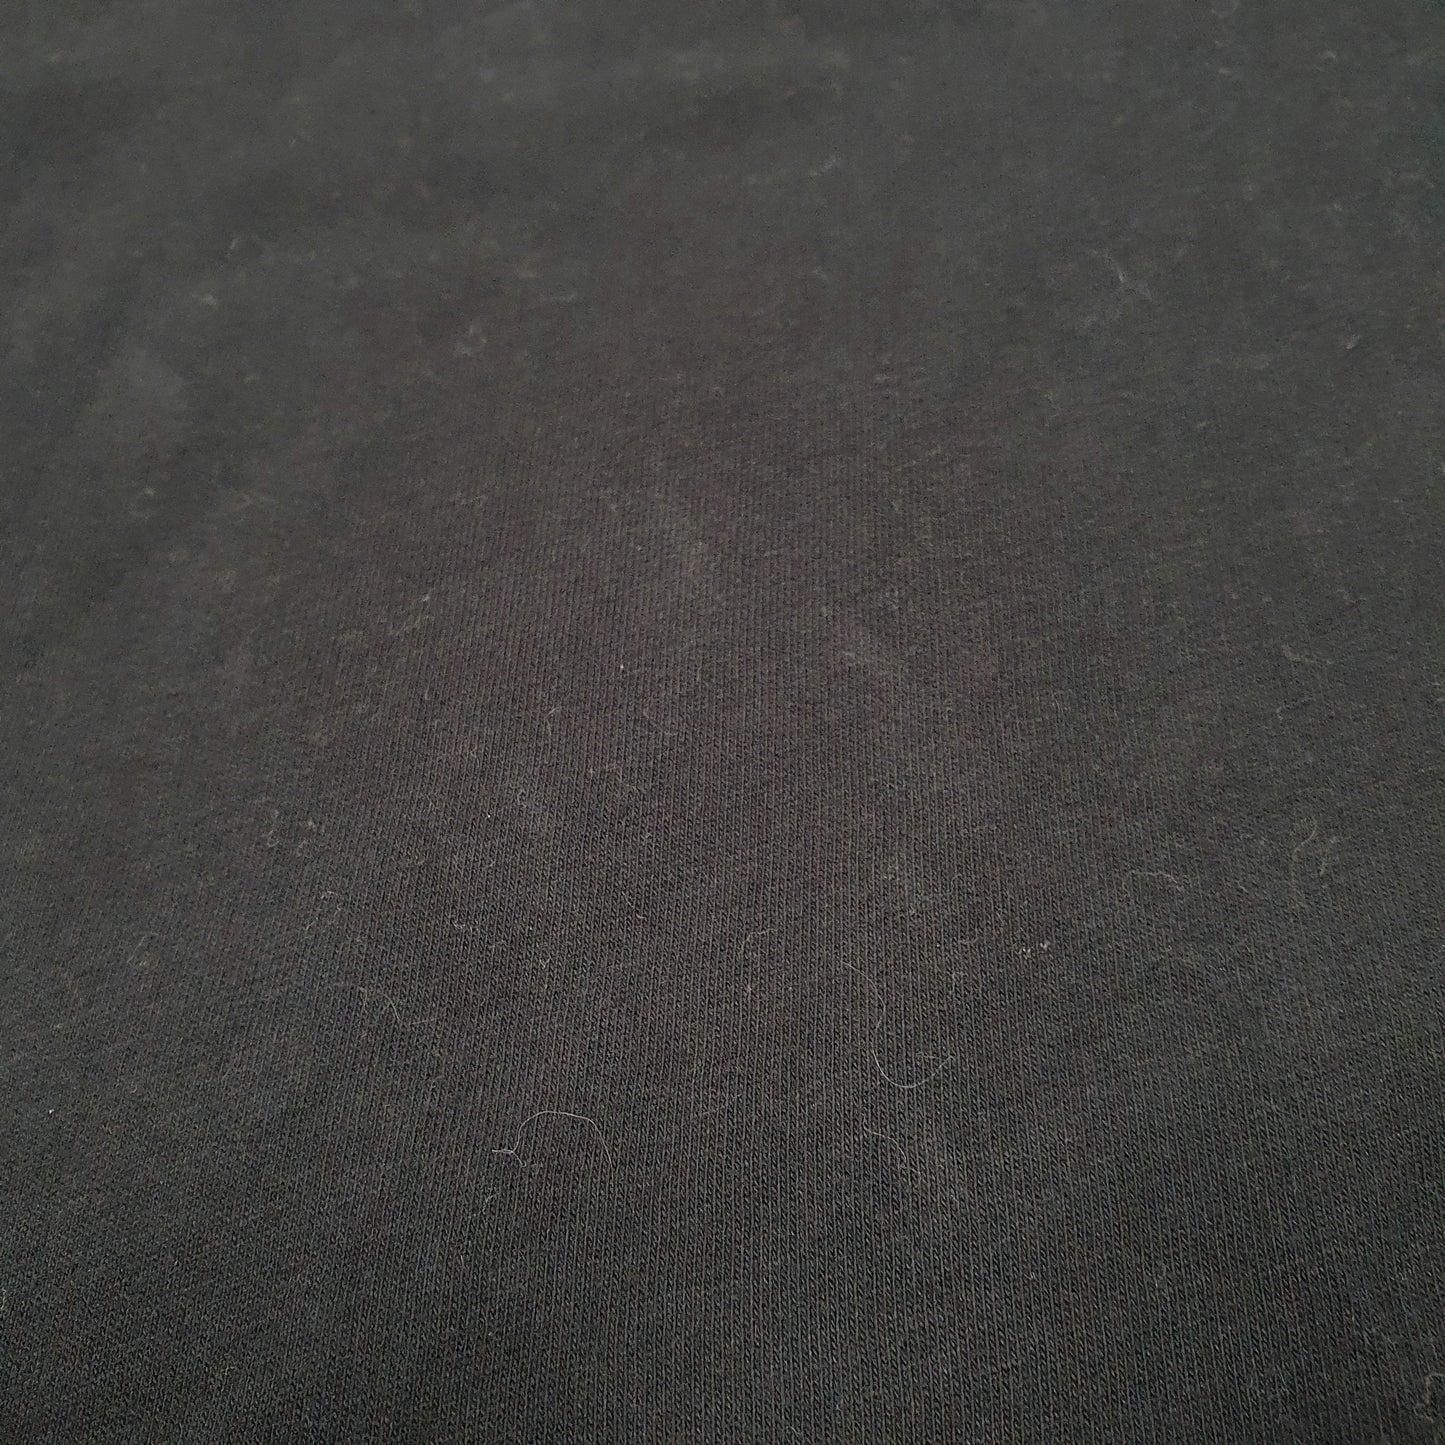 Nike Paris Short Sleeve T Shirt Black